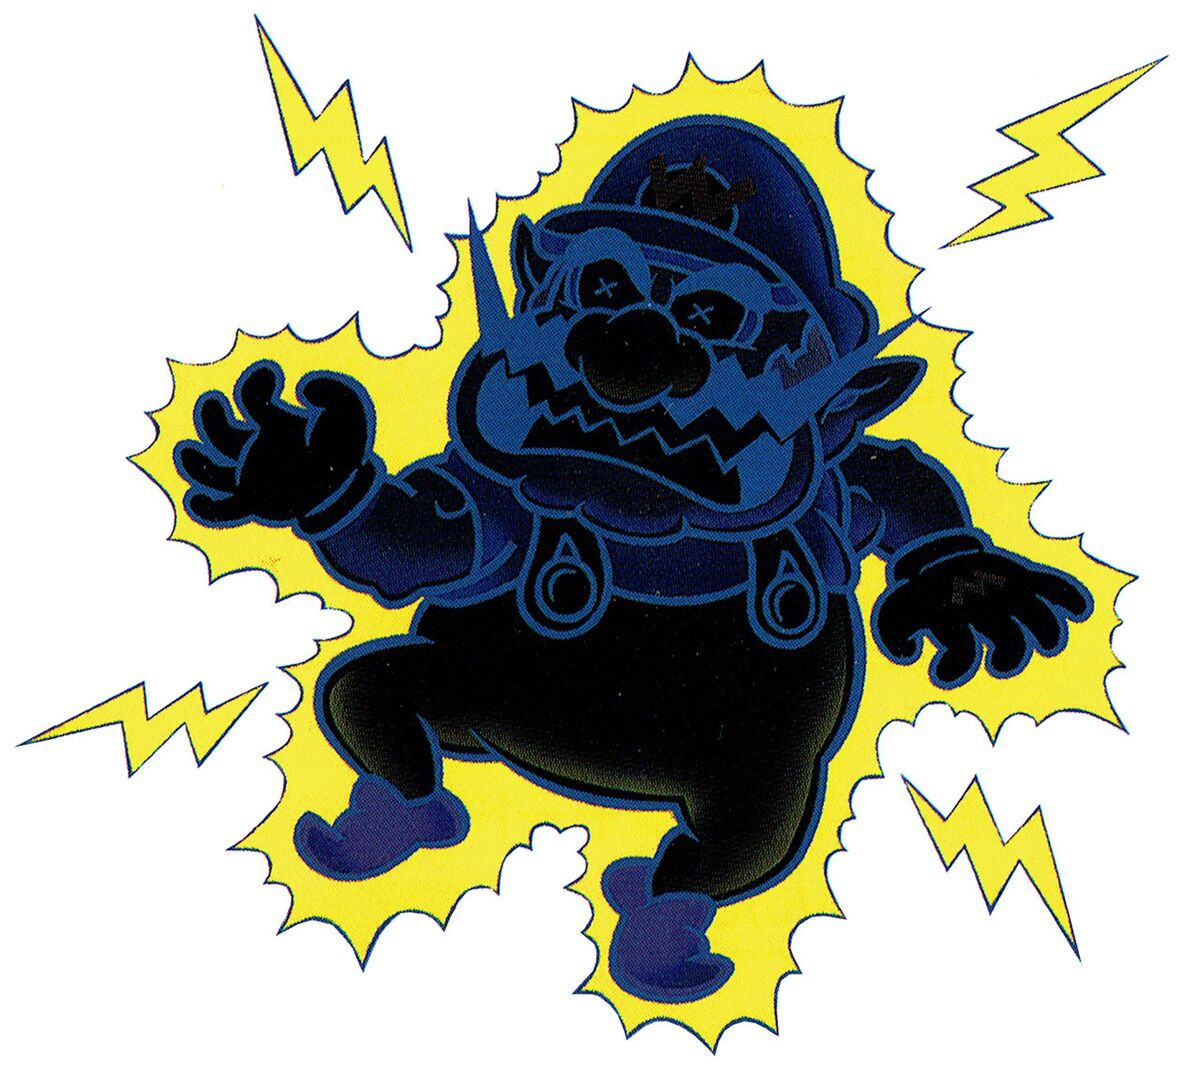 Electric Wario - Super Mario Wiki, the Mario encyclopedia